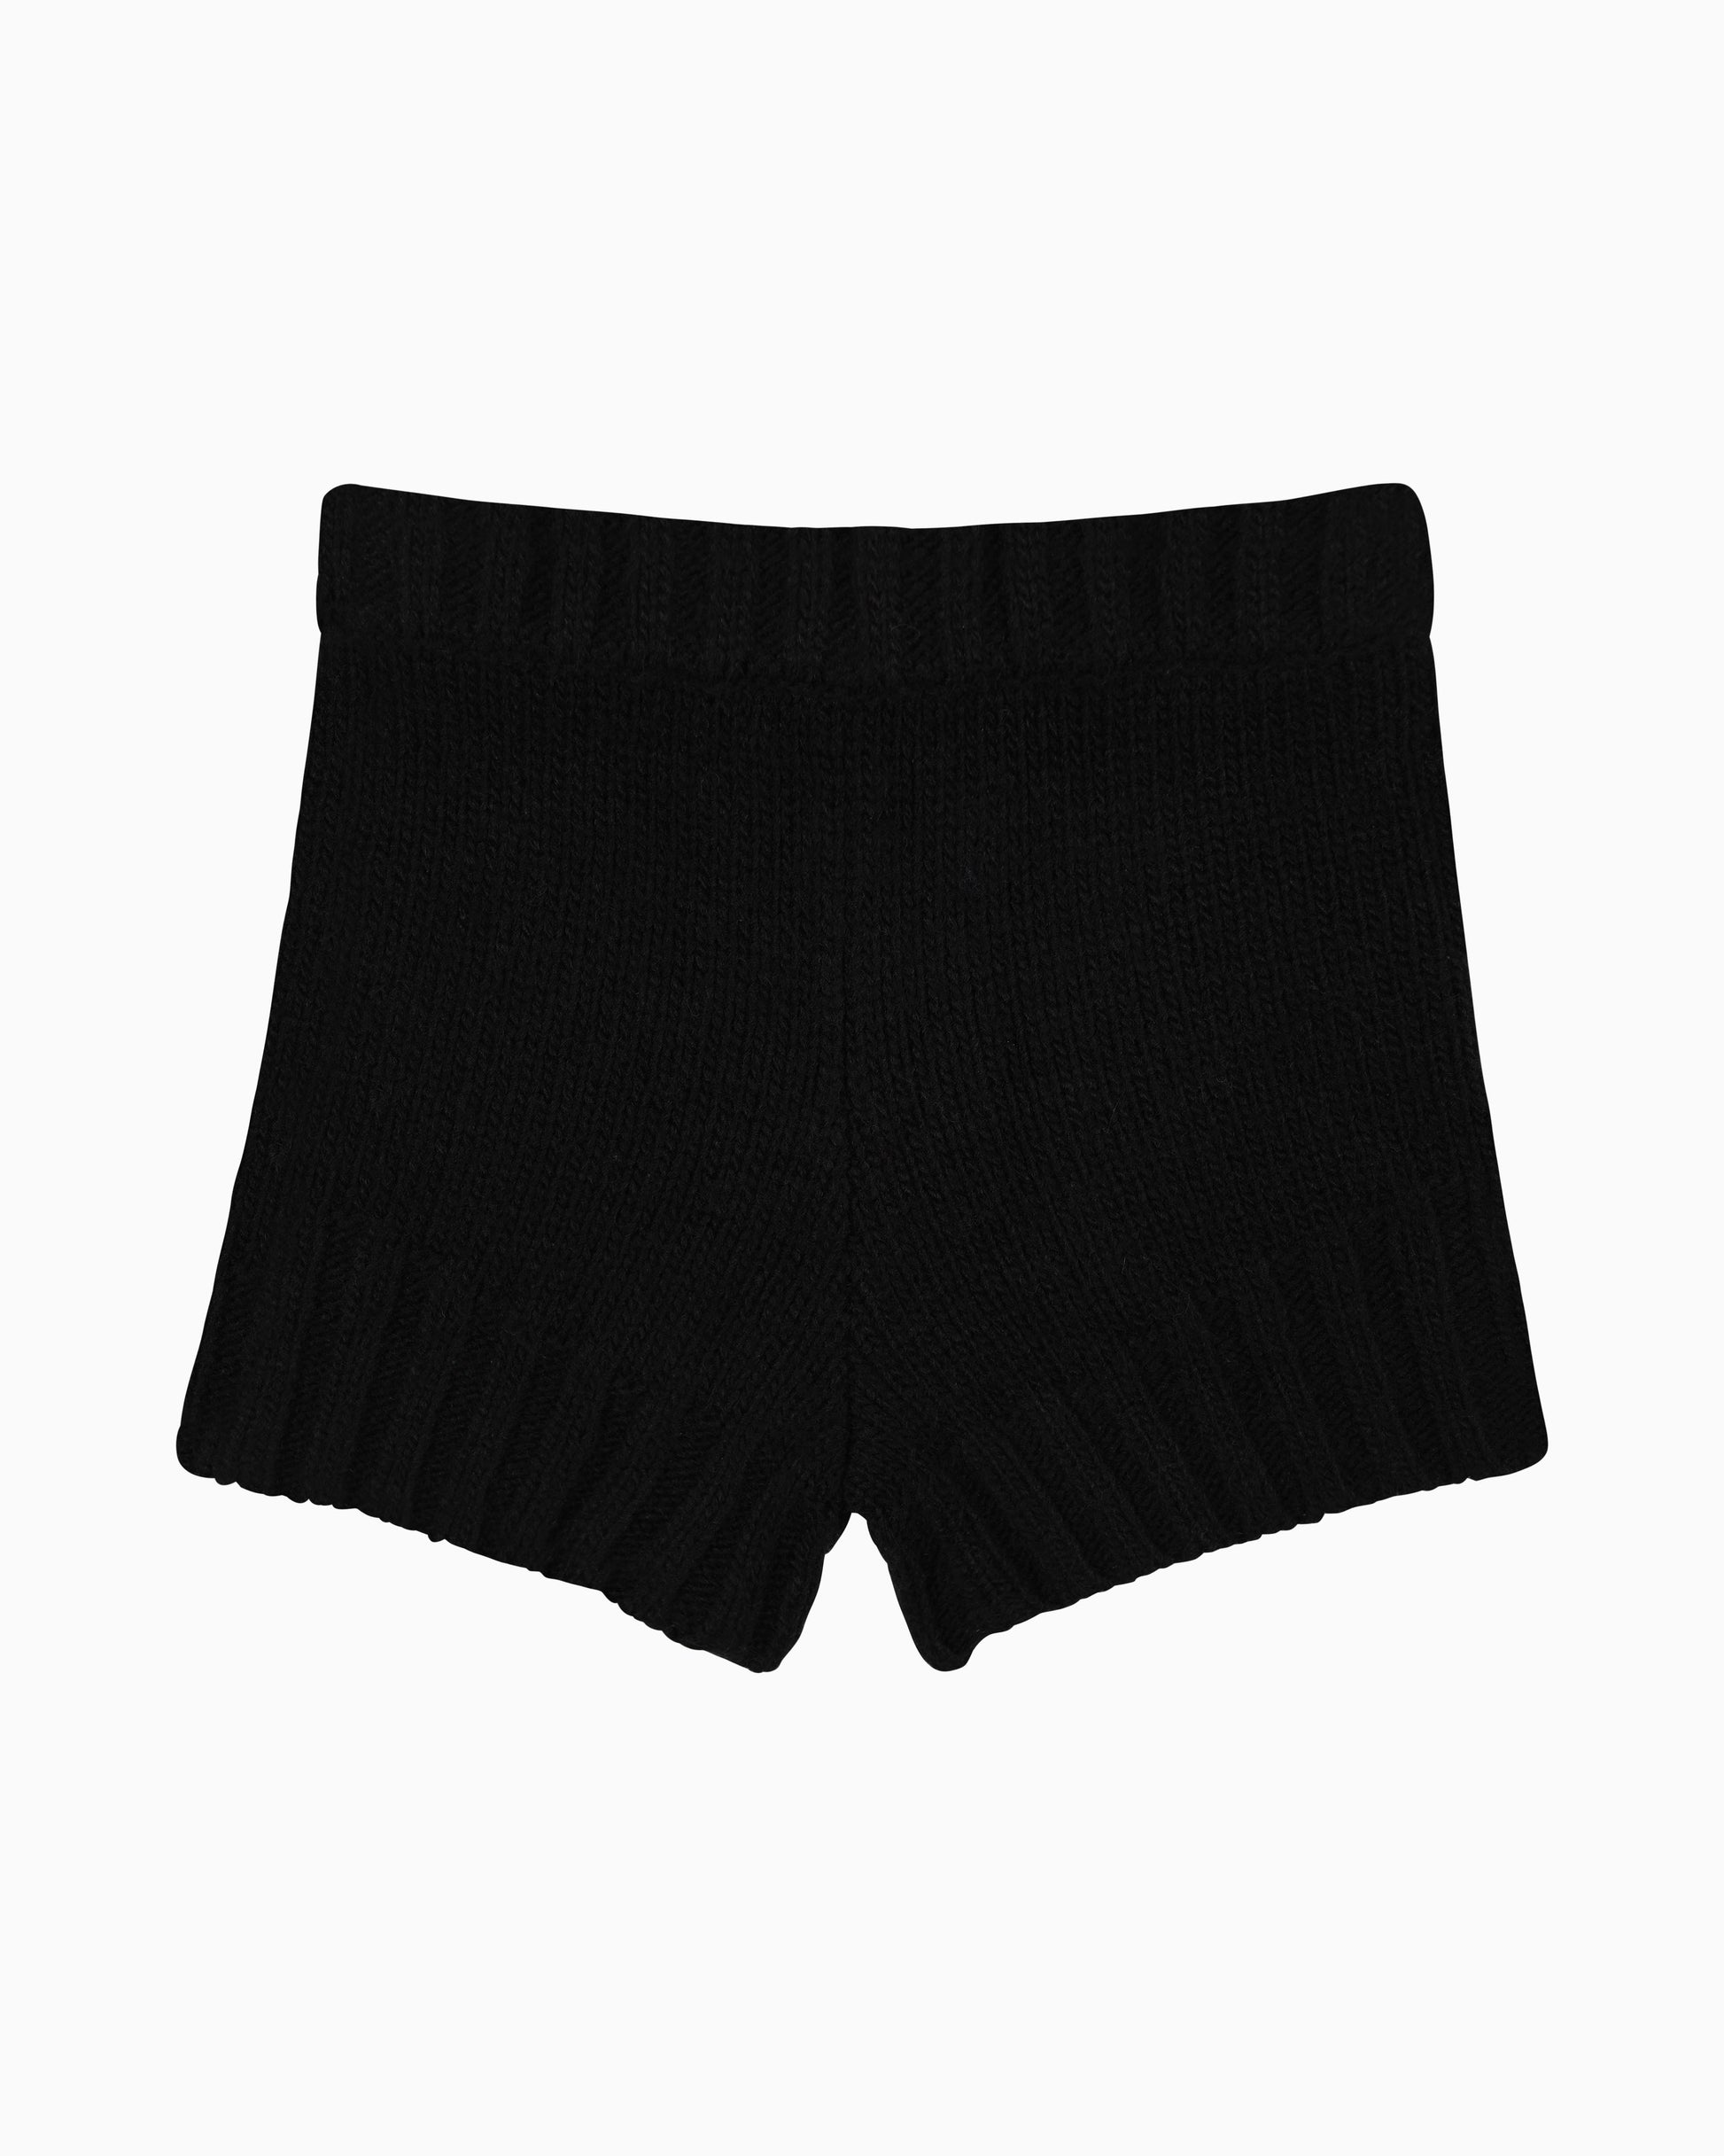 Black Zaya Knit Mini Shorts by Aseye Studio